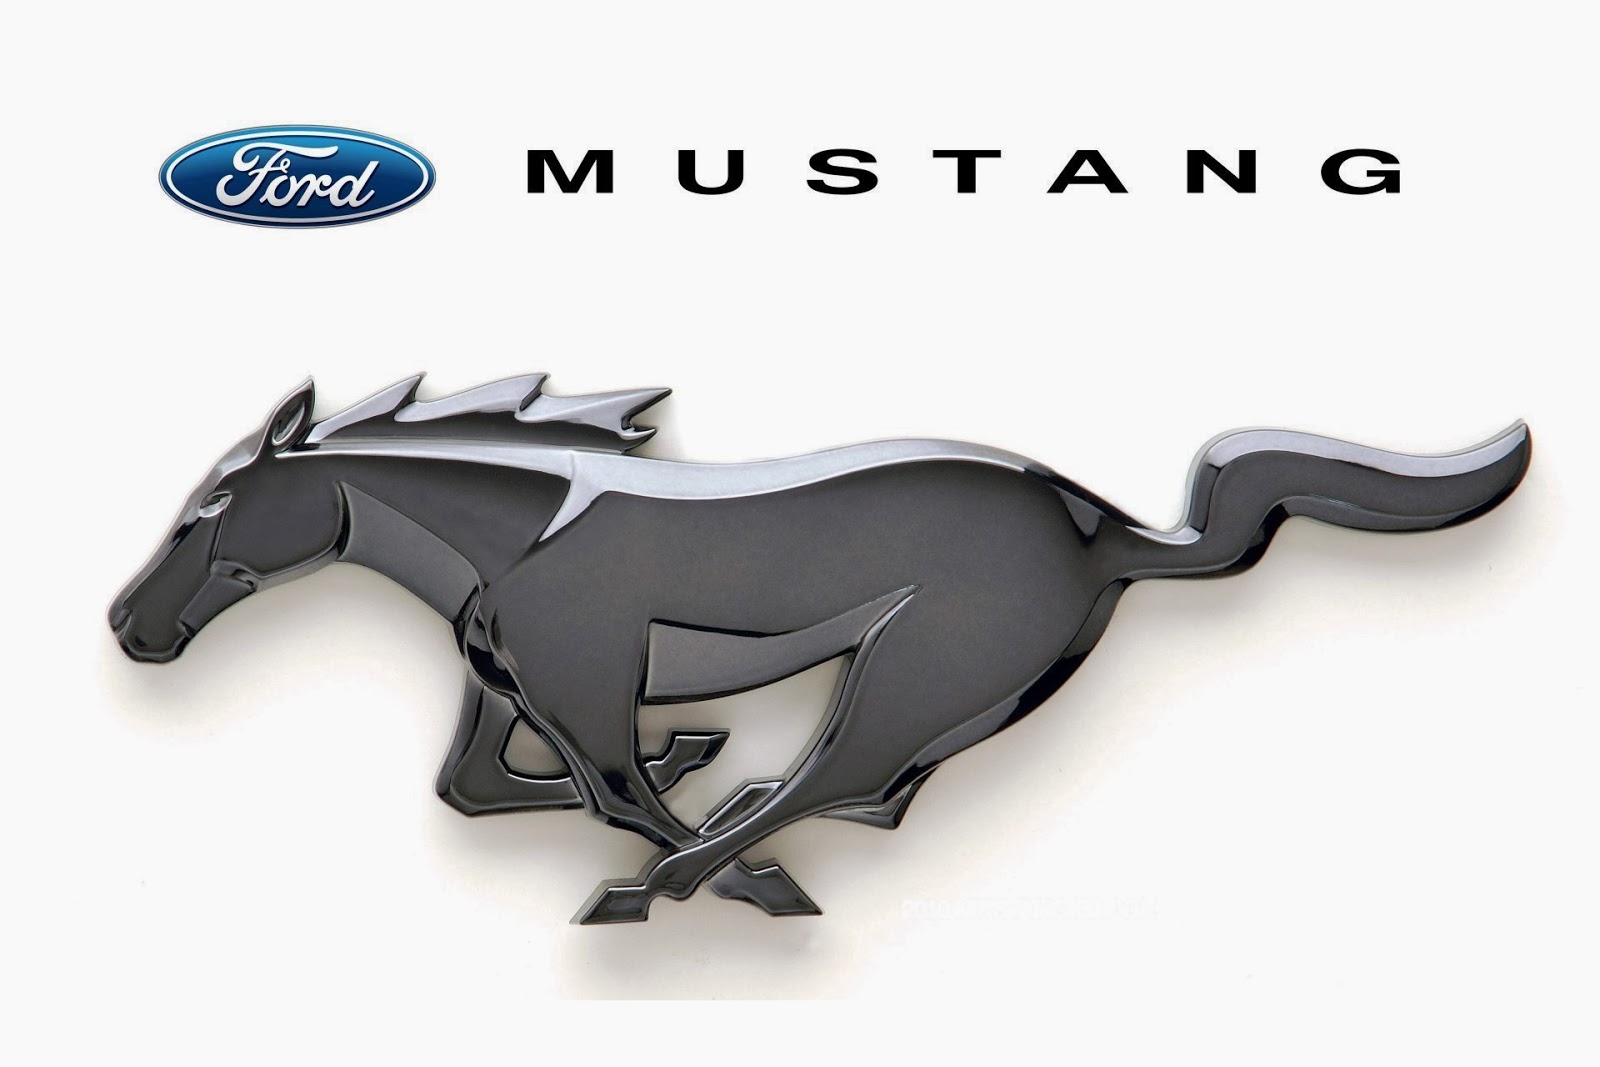 Ford Mustang Logo Car Symbol And History